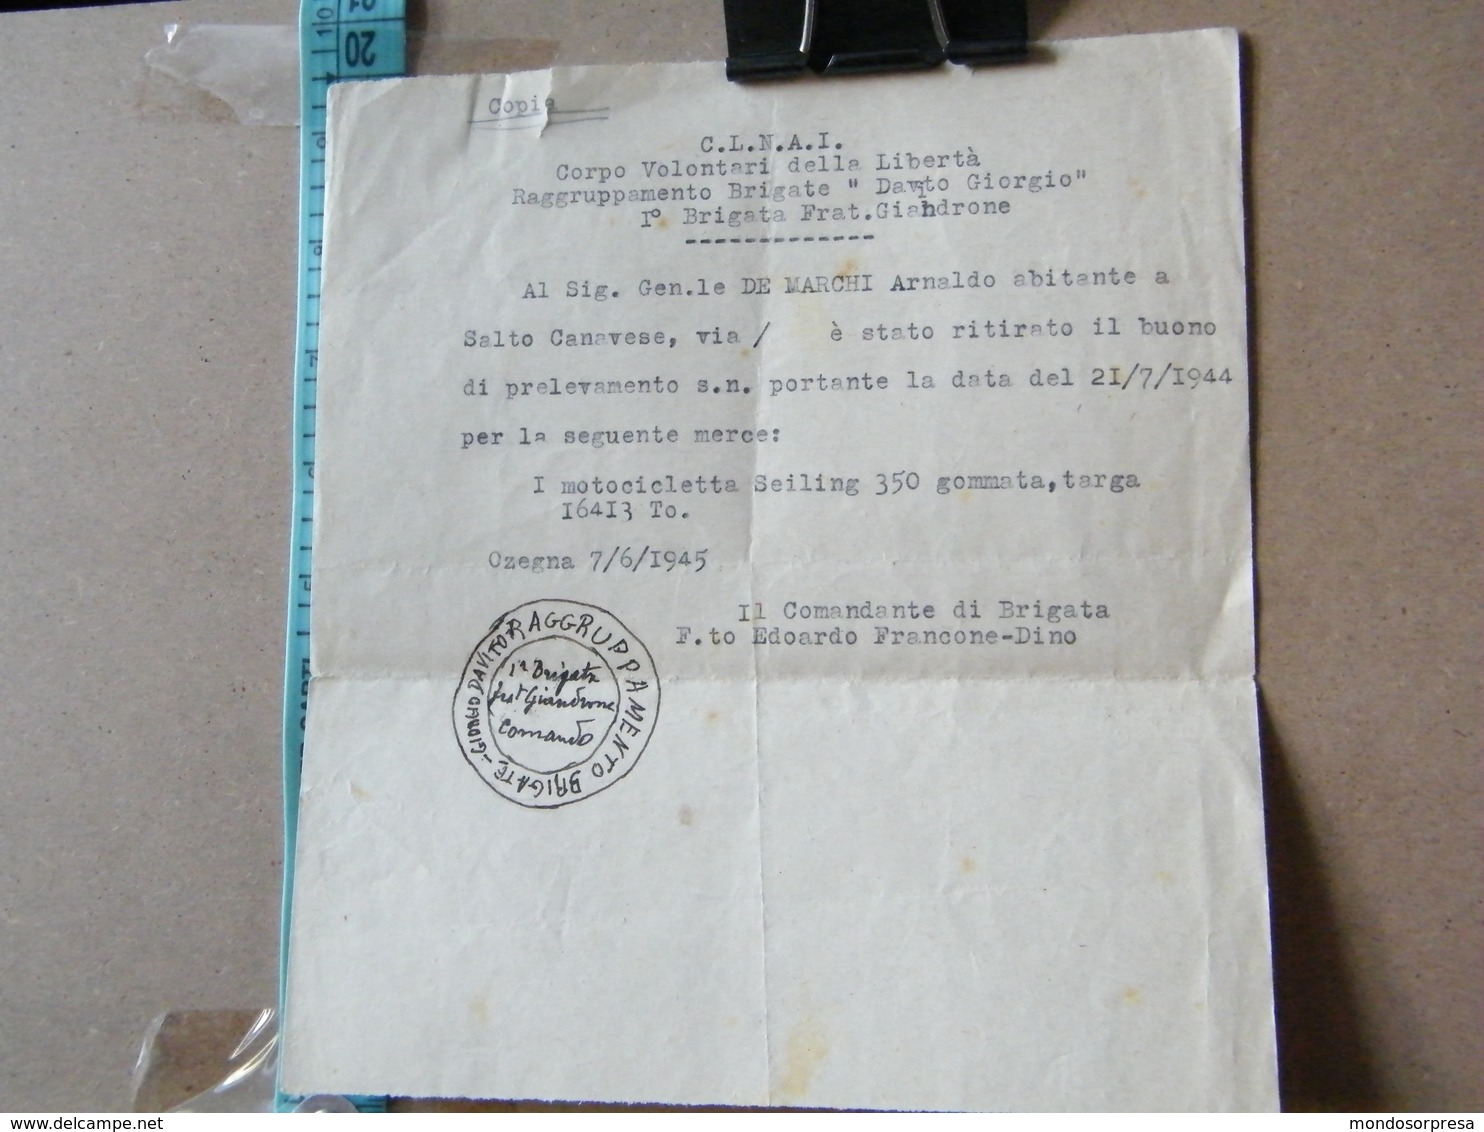 MONDOSORPRESA, C.L.N.A.I CORPO VOLONTARI DELLA LIBERTA RAGGRUPAMENTO BRIGATE DAVITO GIORGIO, BRIGATA FRAT GIANDRONE 1945 - Documenti